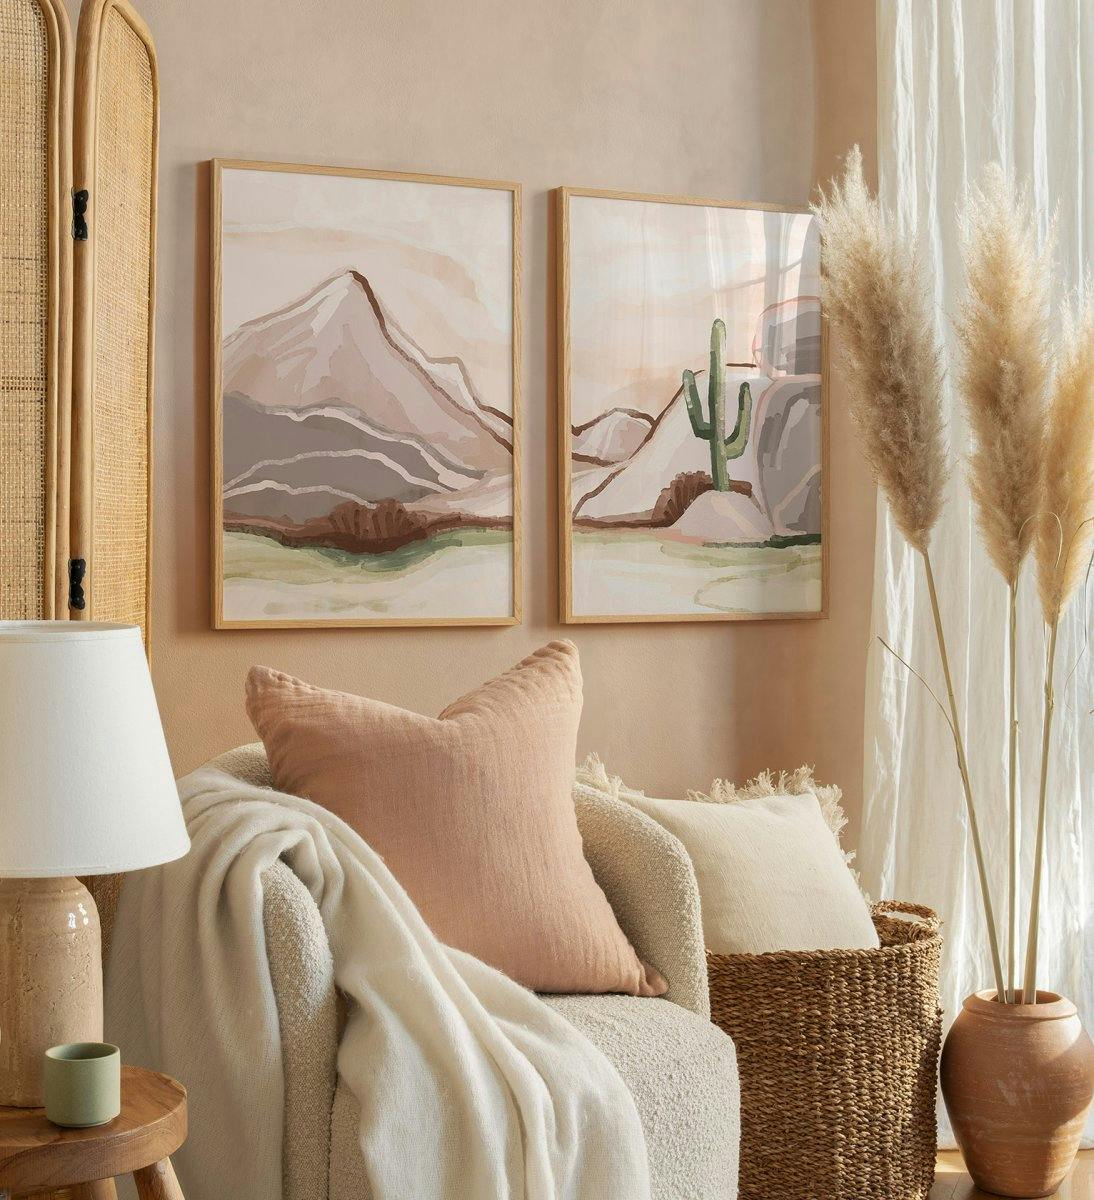 Horská ilustrační nástěnná galerie v hnědé a béžové barvě s dubovými rámečky do ložnice nebo obývacího pokoje